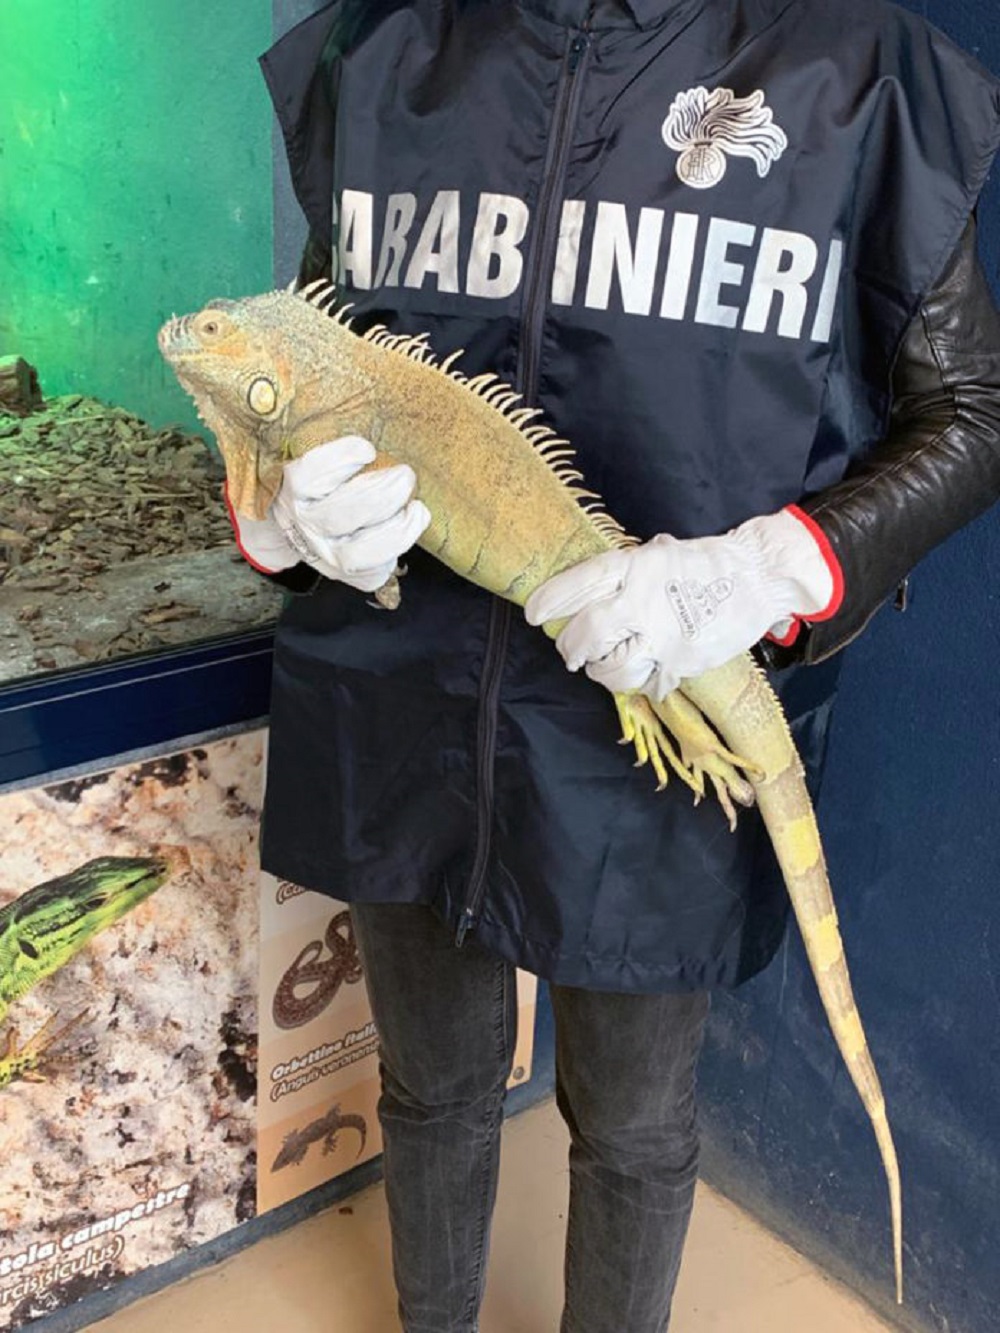 Casoria, i carabinieri recuperano esemplare di Iguana a rischio di estinzione